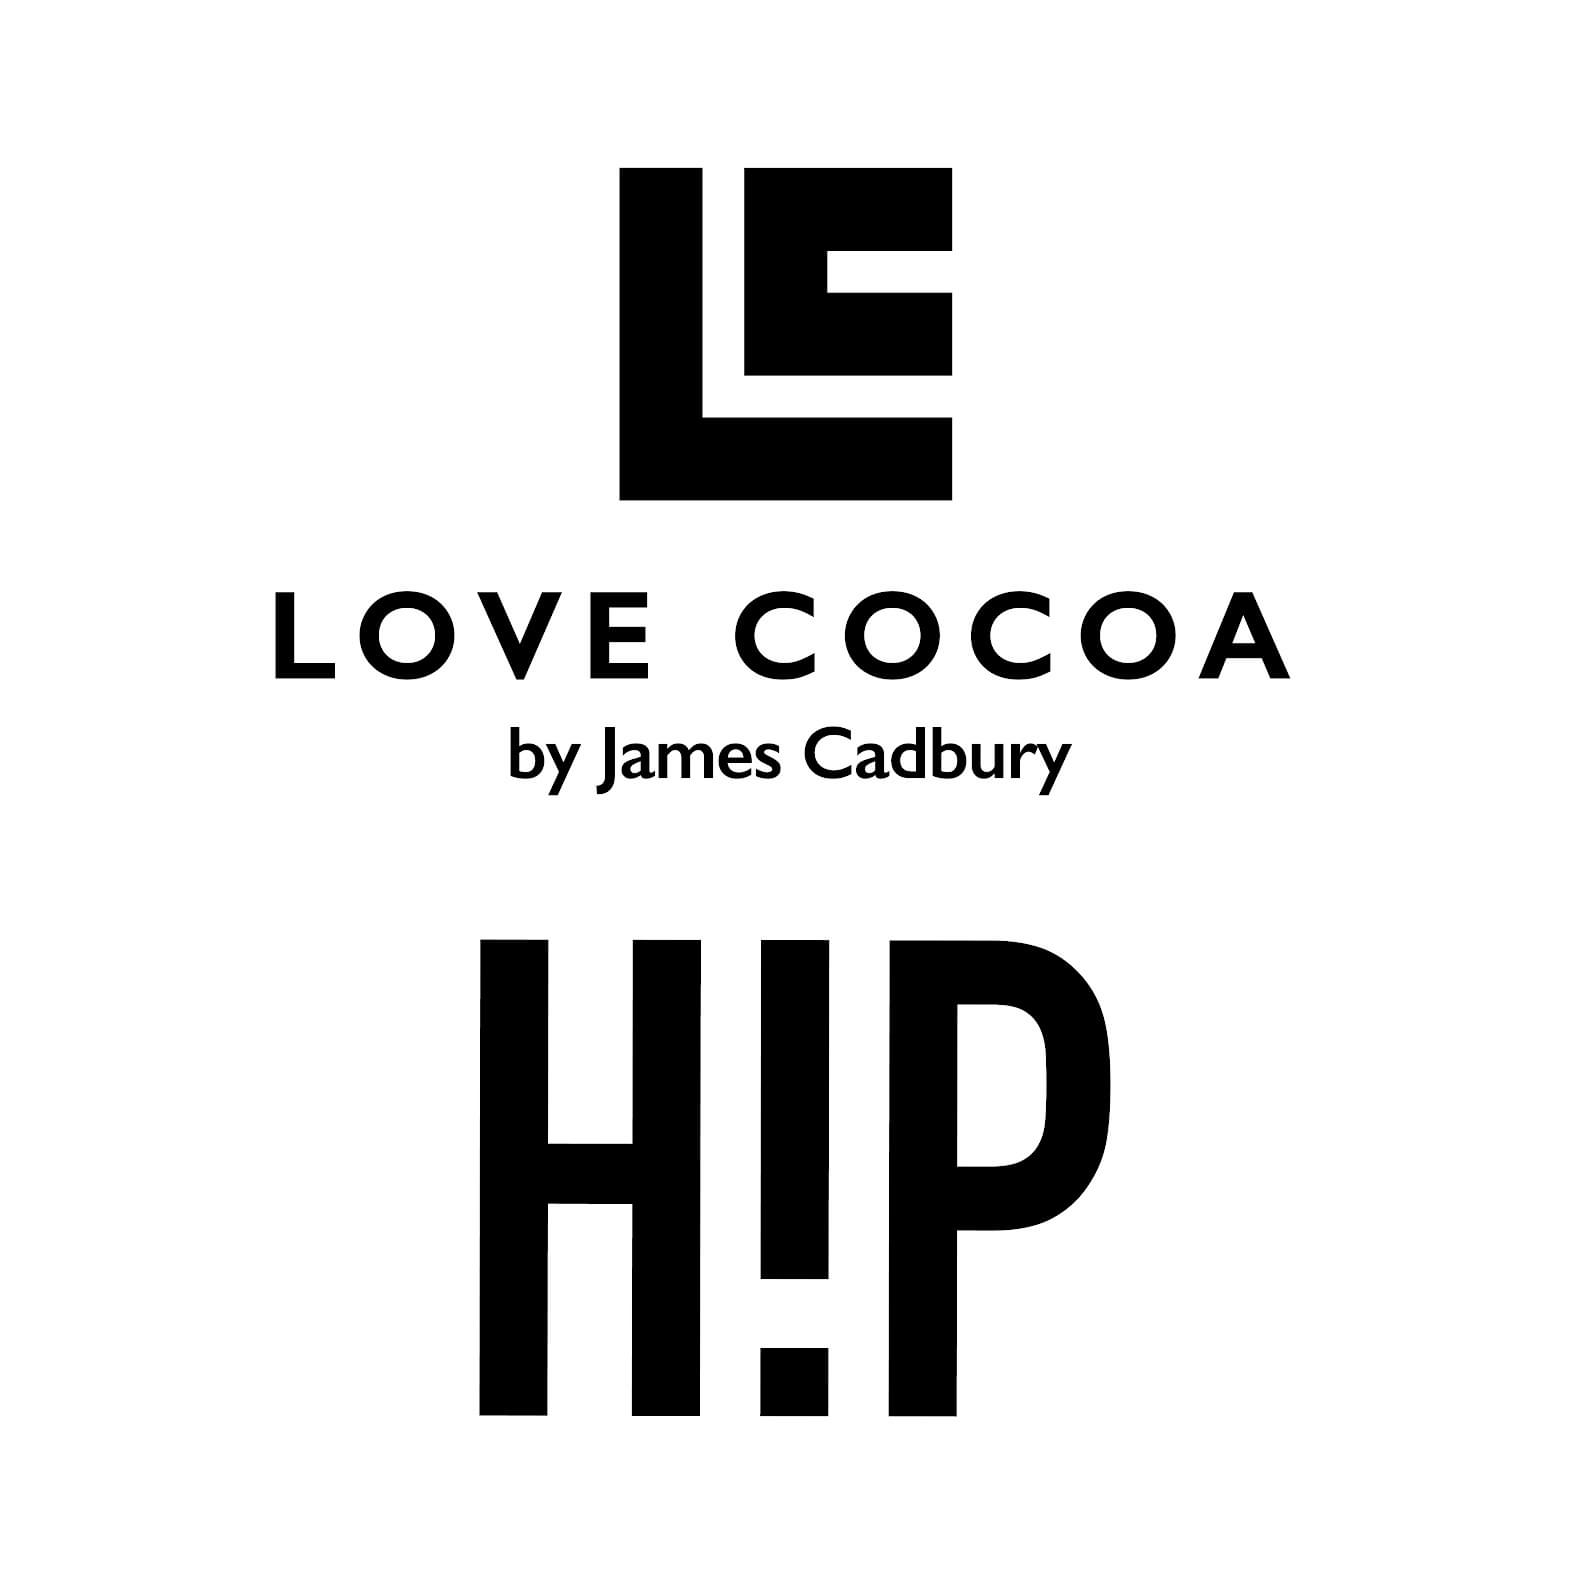 Love Cocoa Ltd